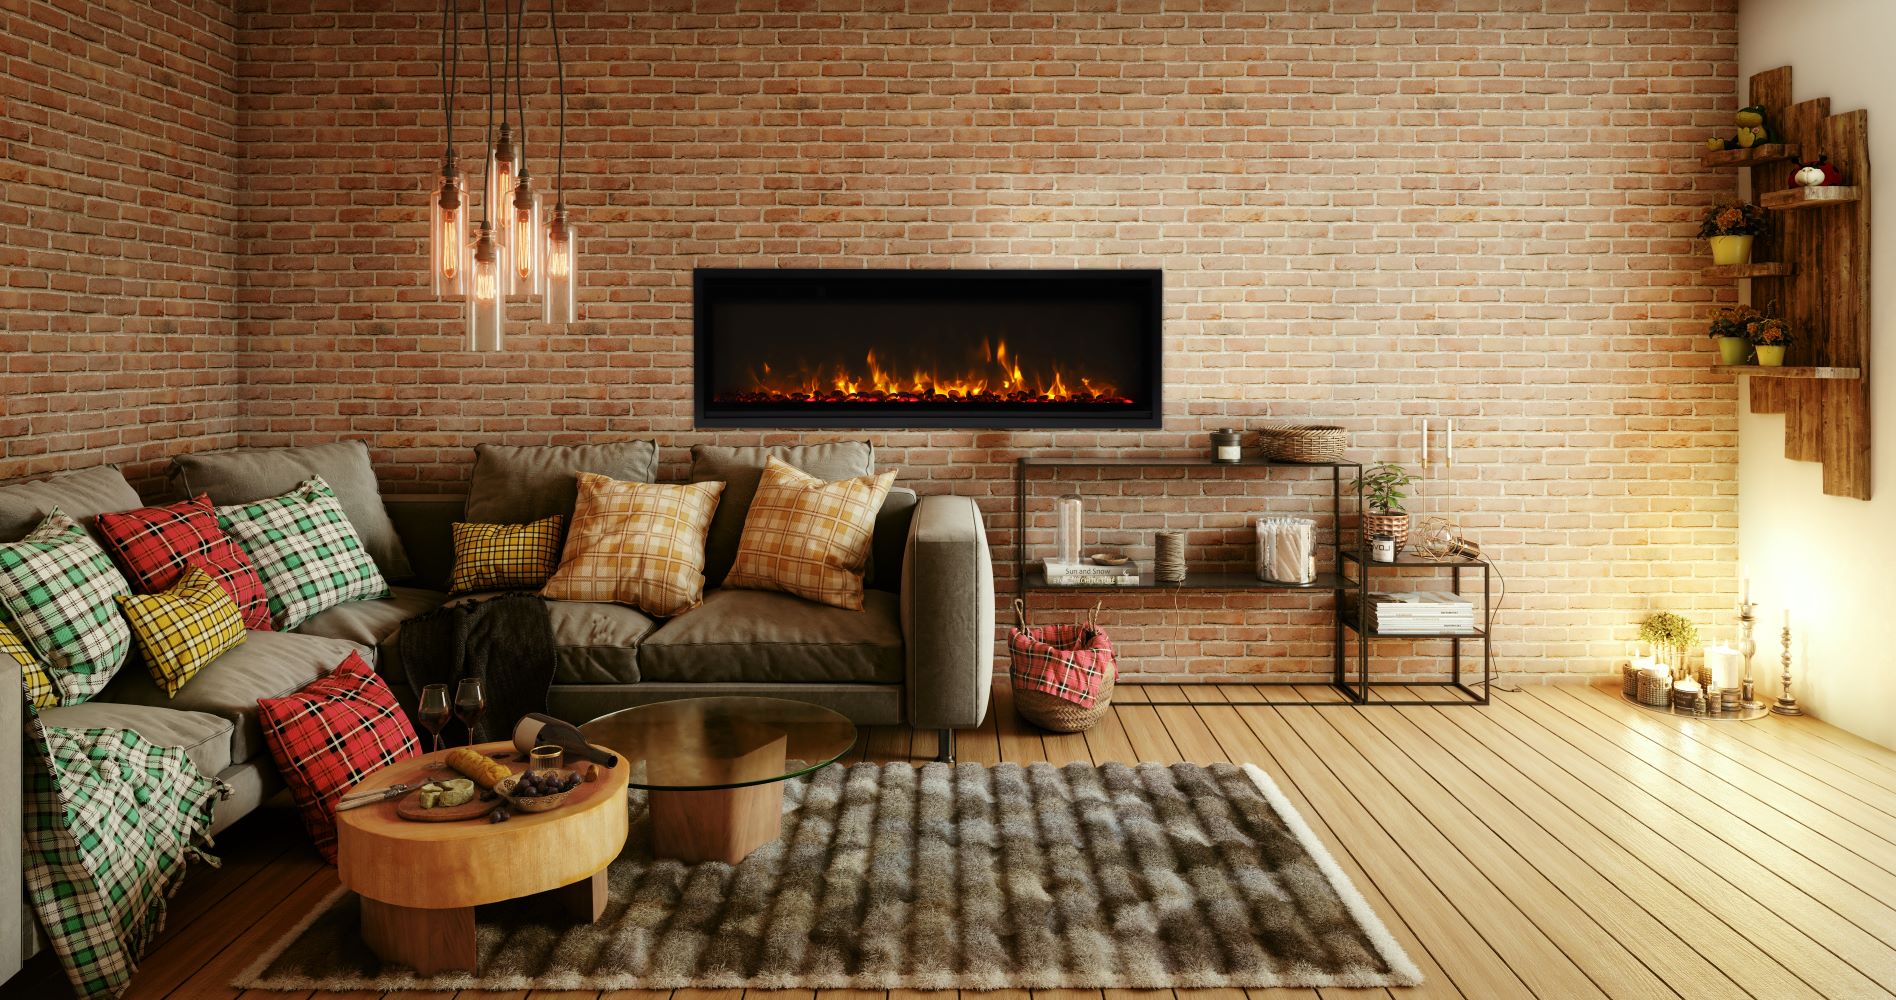 Amantii 60" Symmetry 3.0 Xtra Slim Smart WiFi Electric Fireplace -SYM-SLIM-60- Lifestyle Brick Wall Mount